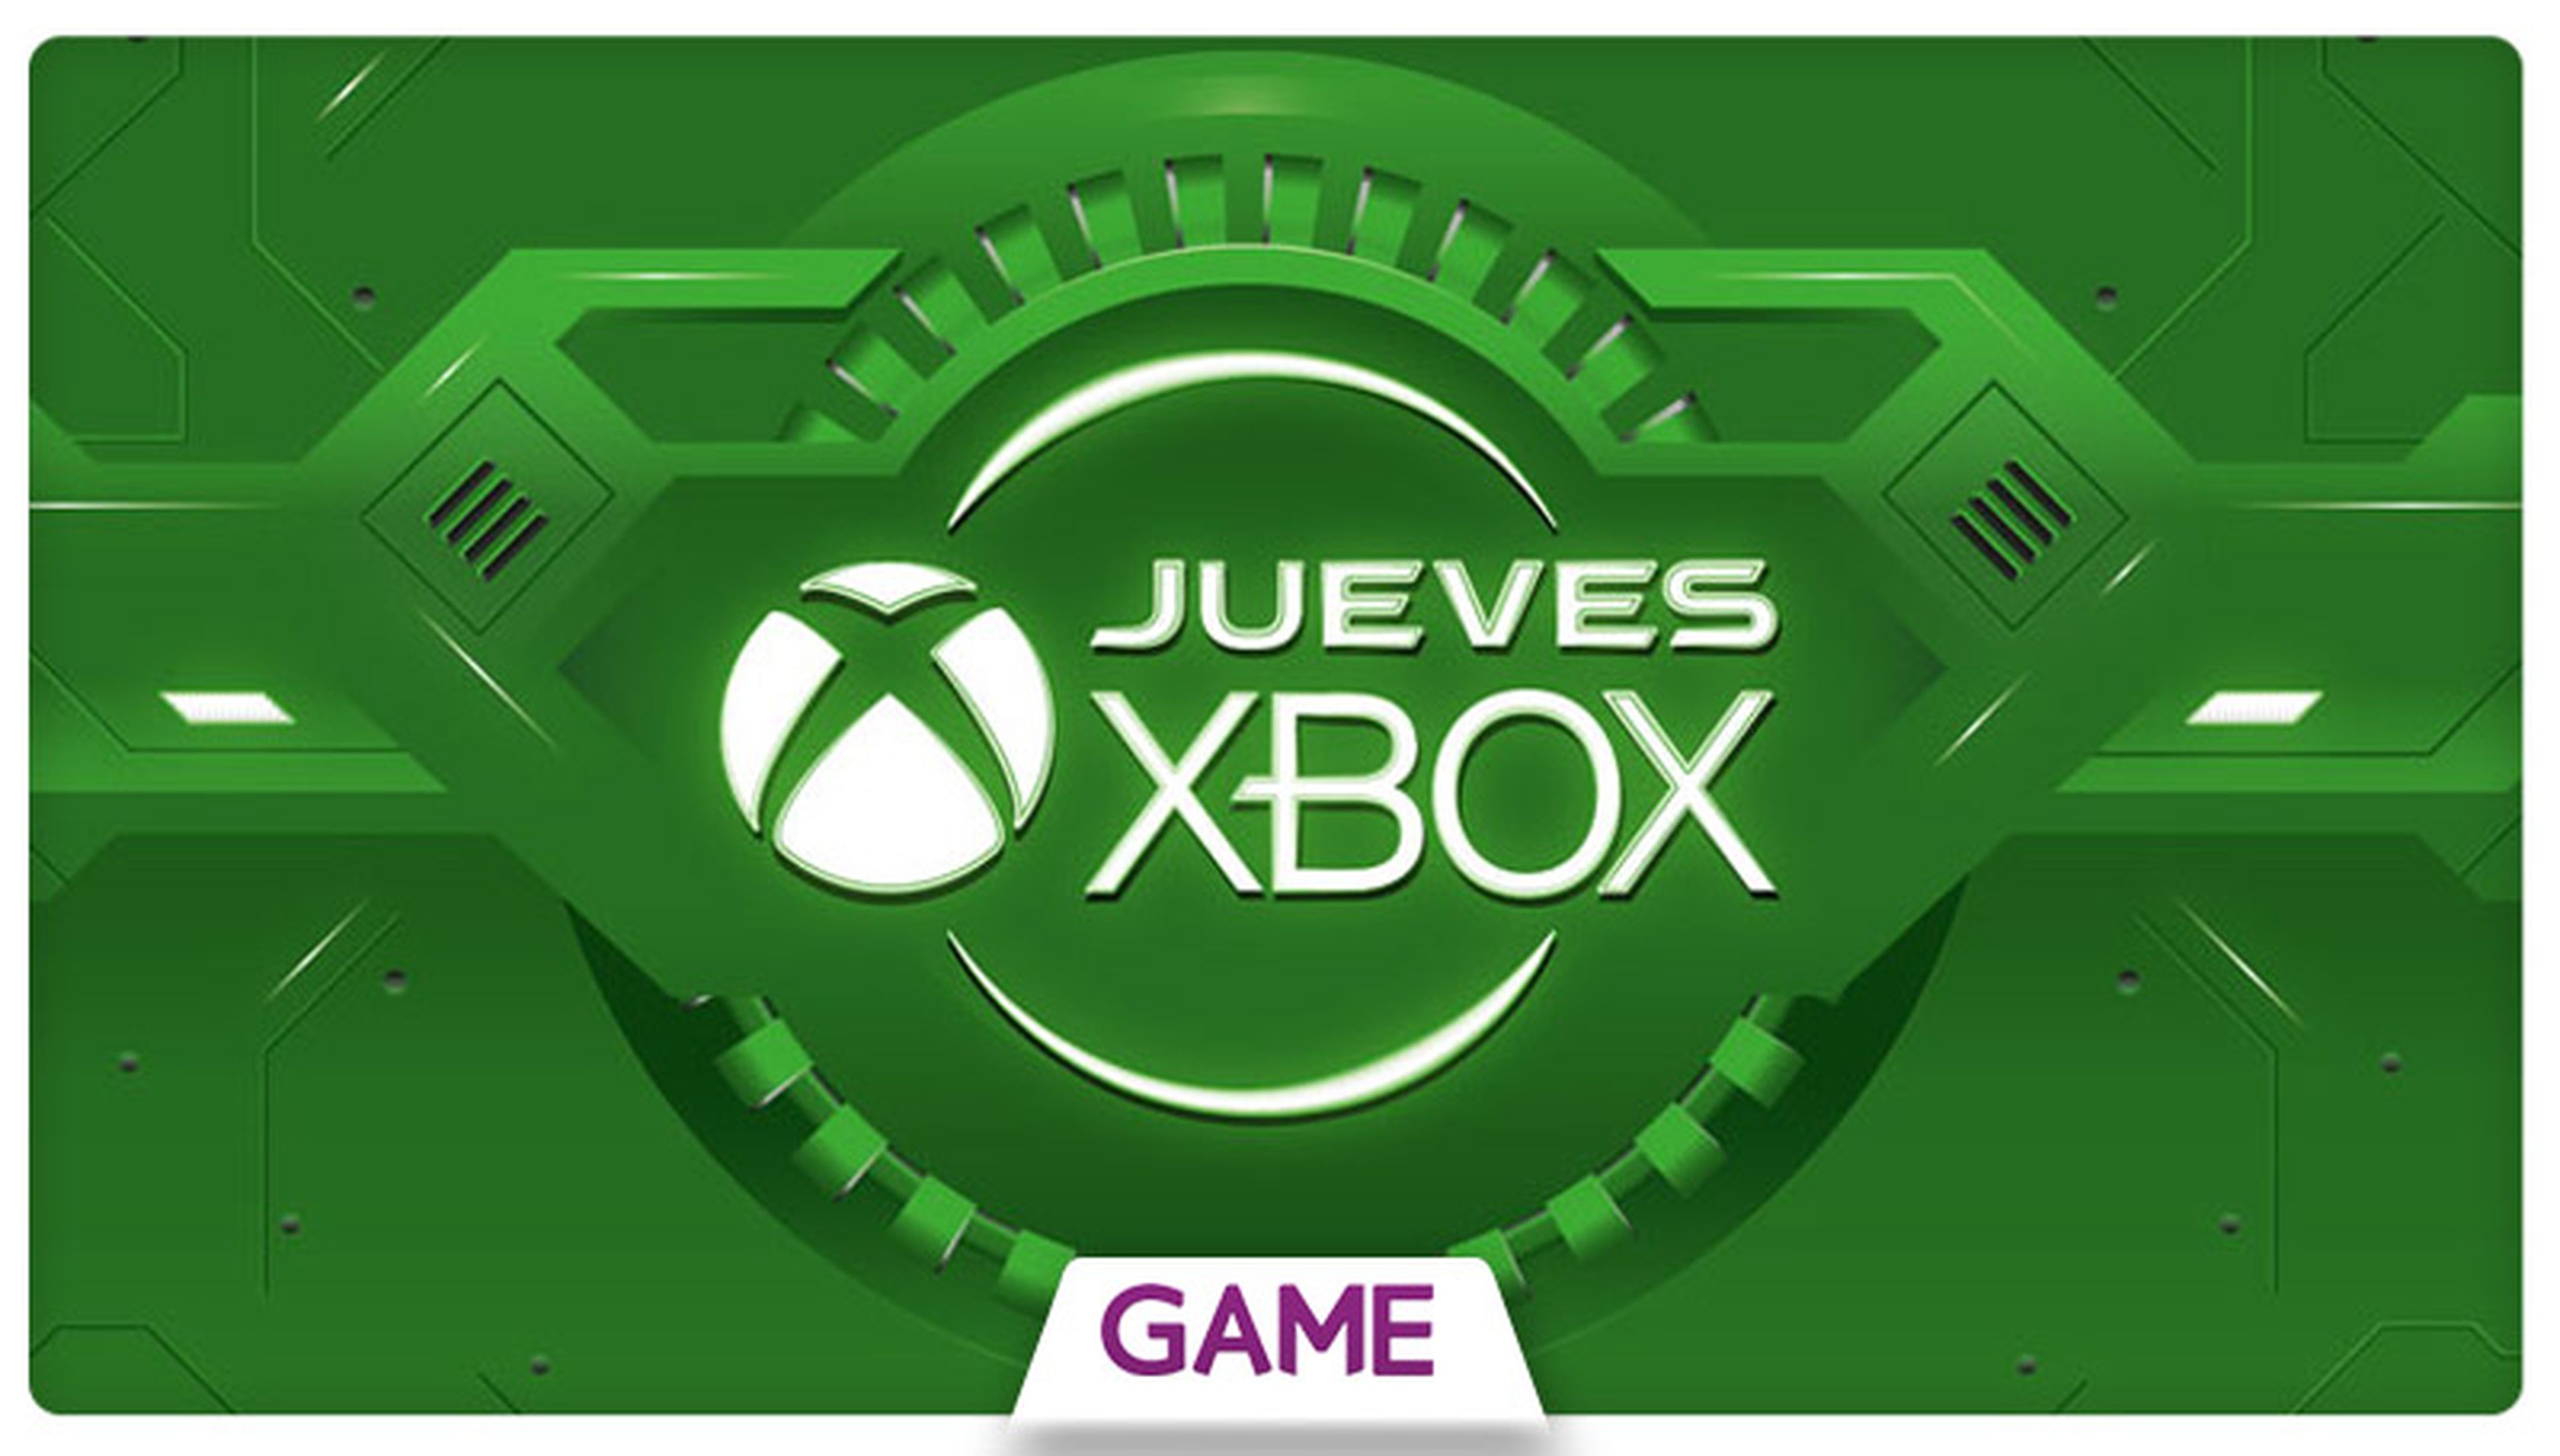 Jueves Xbox en GAME: Duodécima semana de ofertas